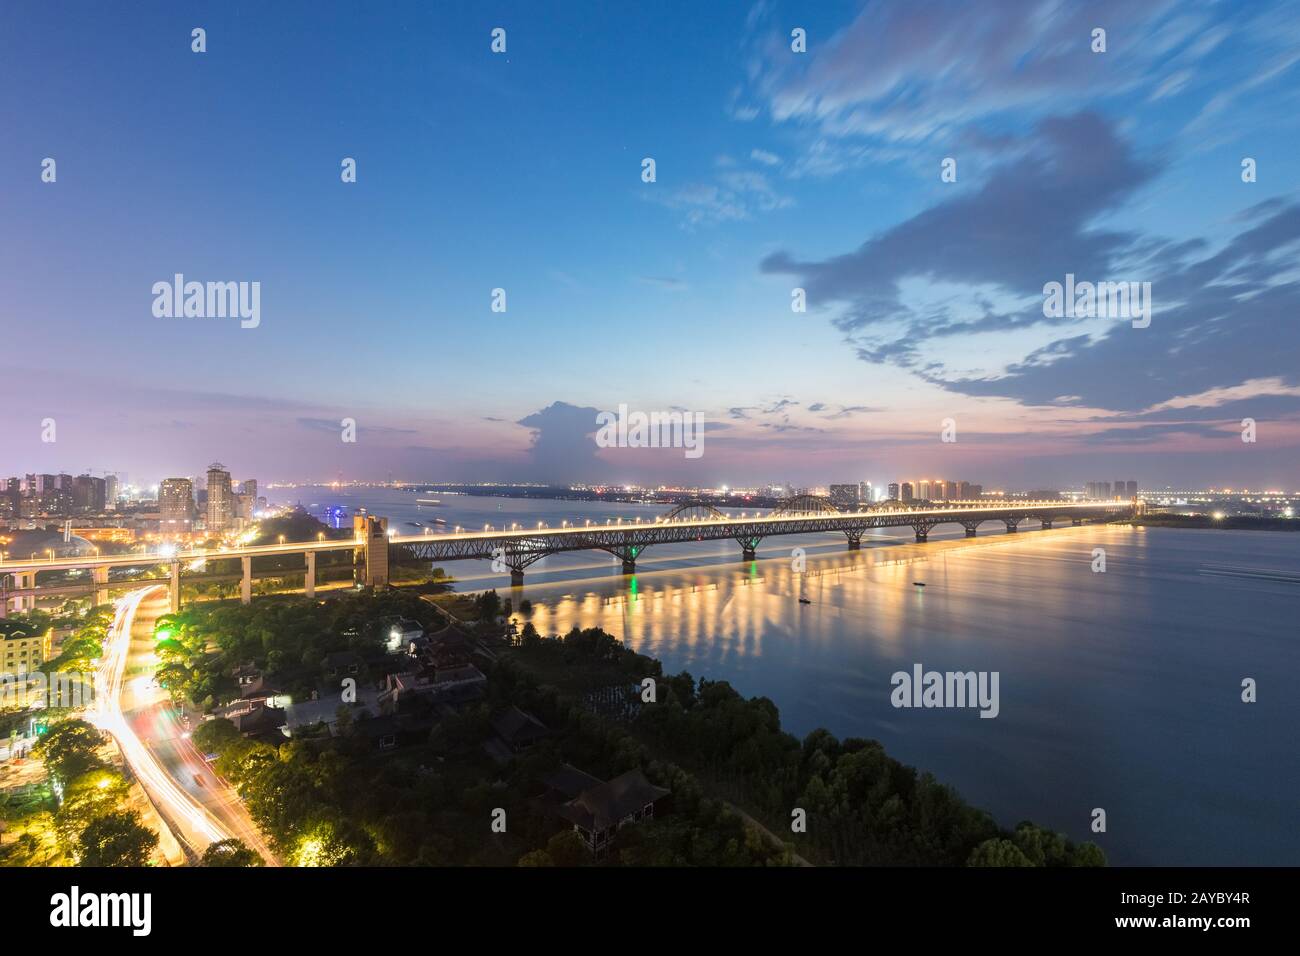 jiujiang yangtze river bridge at night Stock Photo